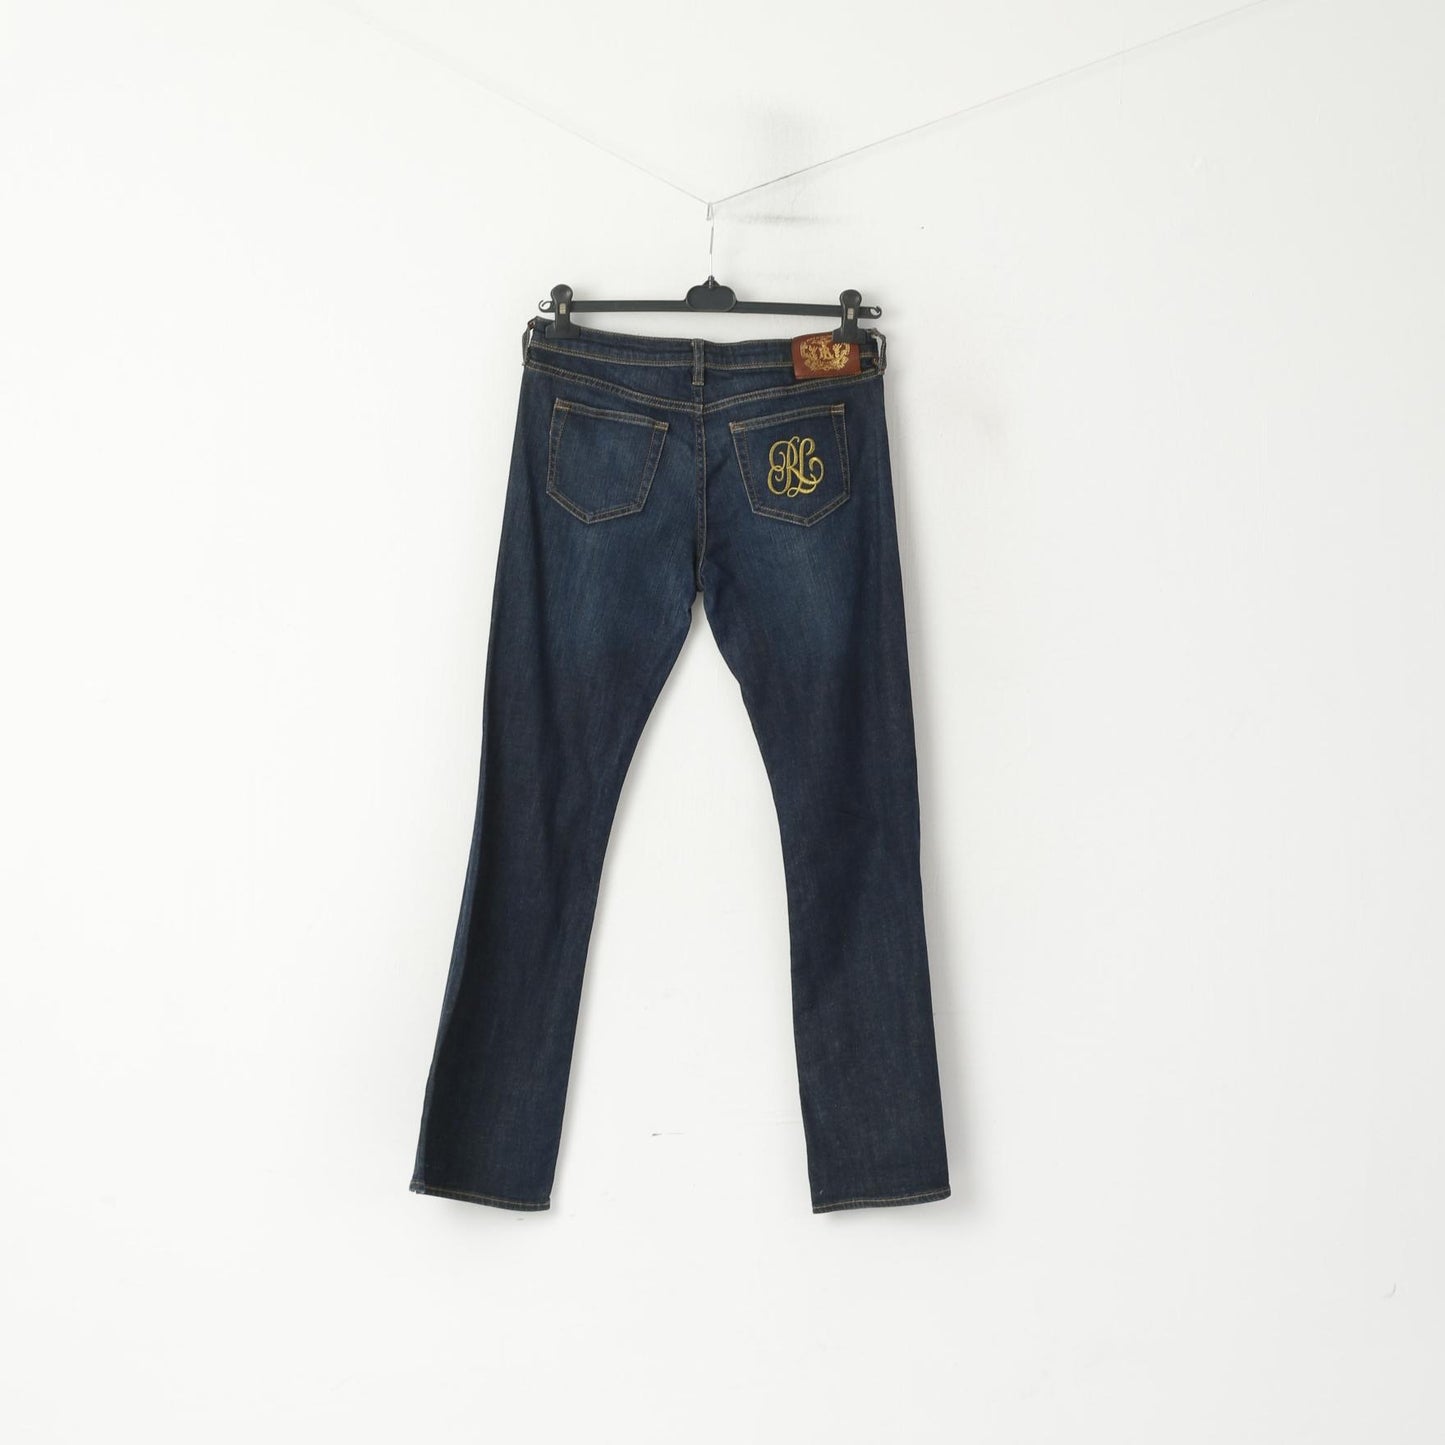 Polo Jeans Ralph Lauren Women 30 / 32 Trousers Navy Denim Jeans Cotton Bootcut Pants